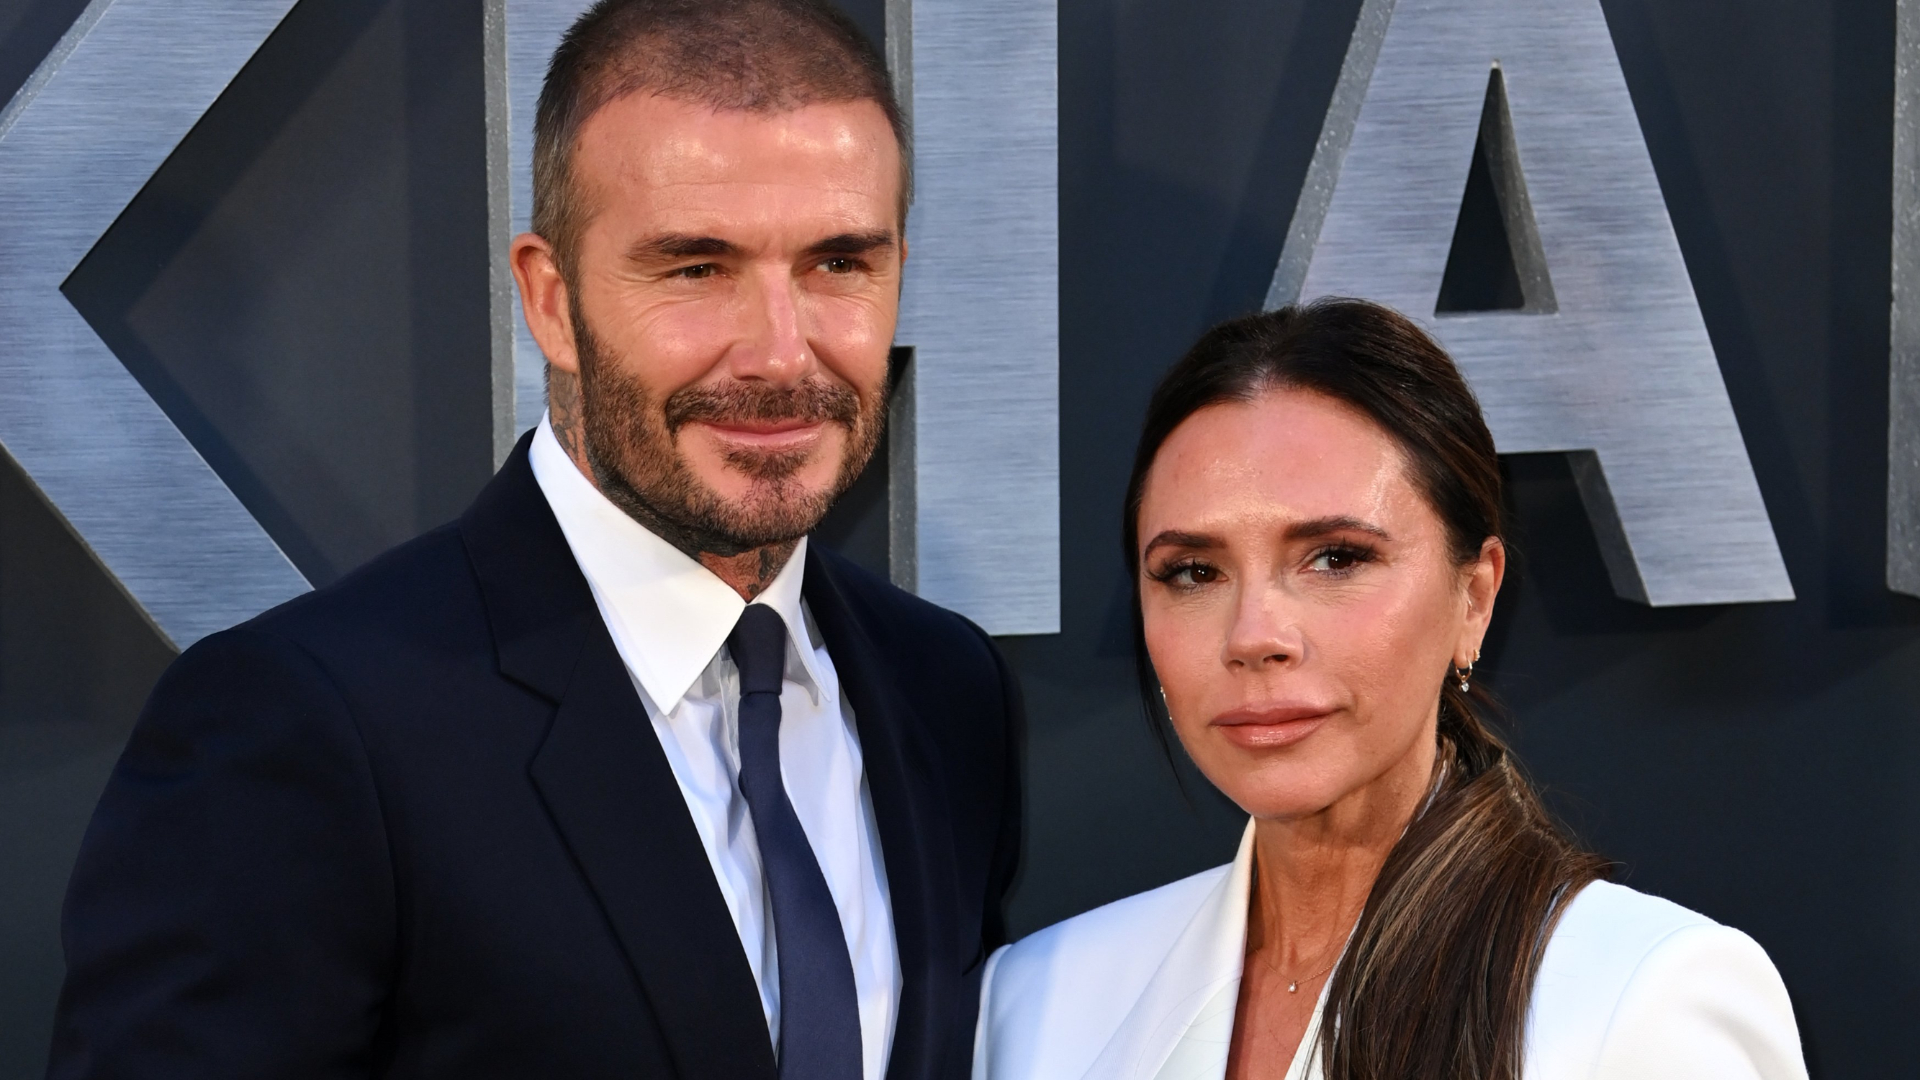 Victoria Beckham quebra o silêncio sobre suposta traição do marido David e aponta “ressentimento”: “Período mais difícil”